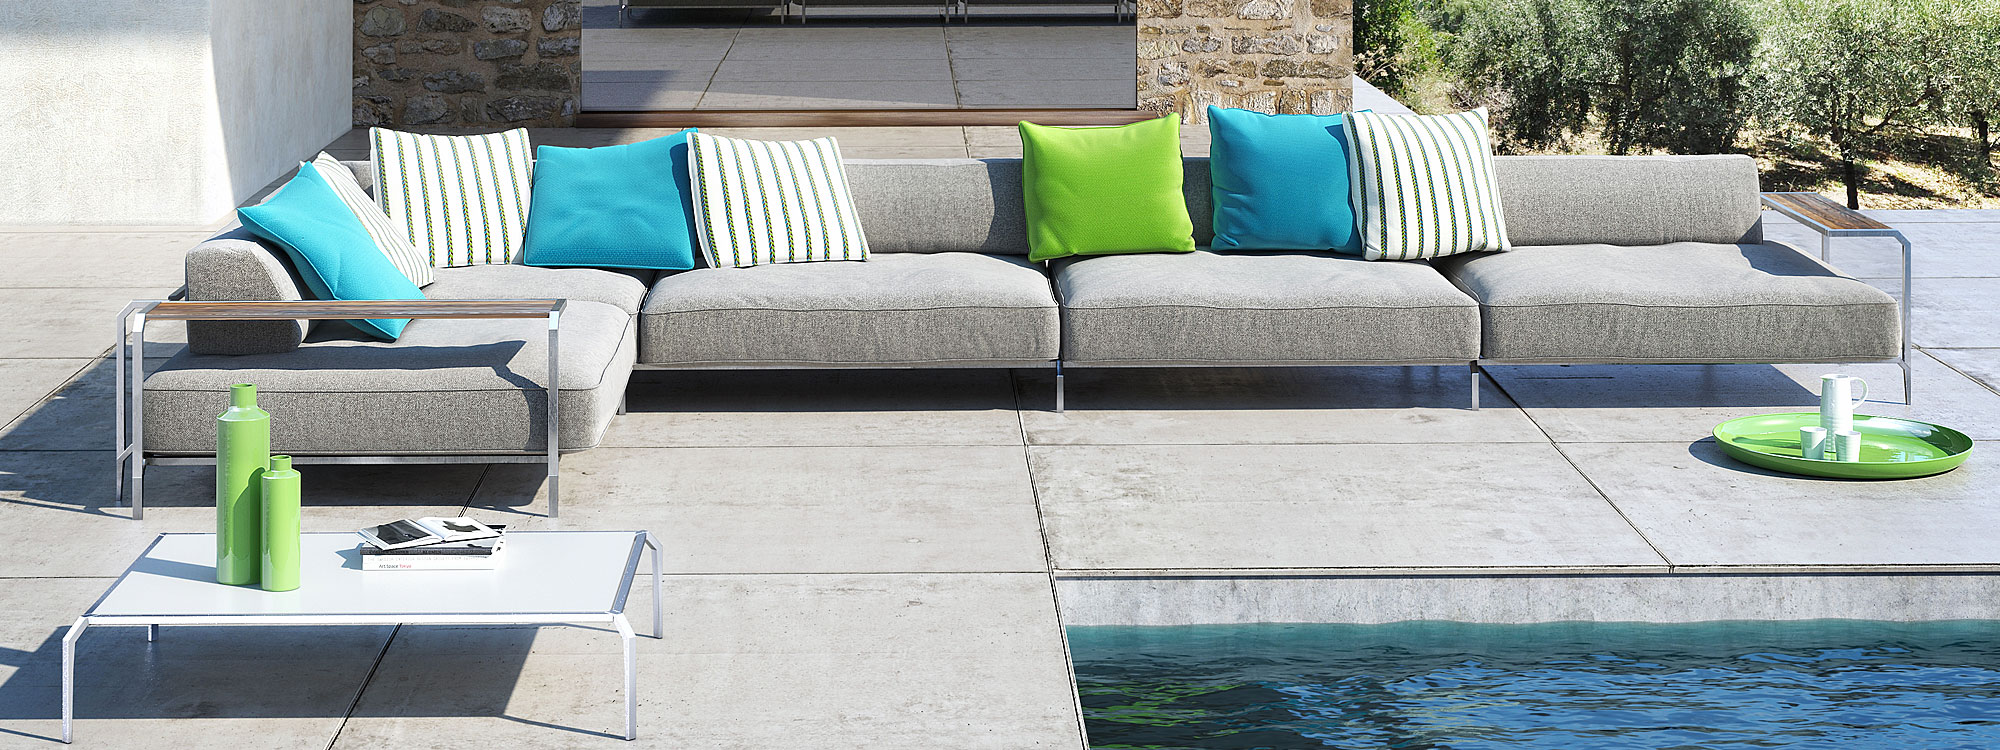 Sabal contemporary garden sofa is a luxury outdoor sofa in quality modern garden furniture materials by Coro Italian garden furniture company